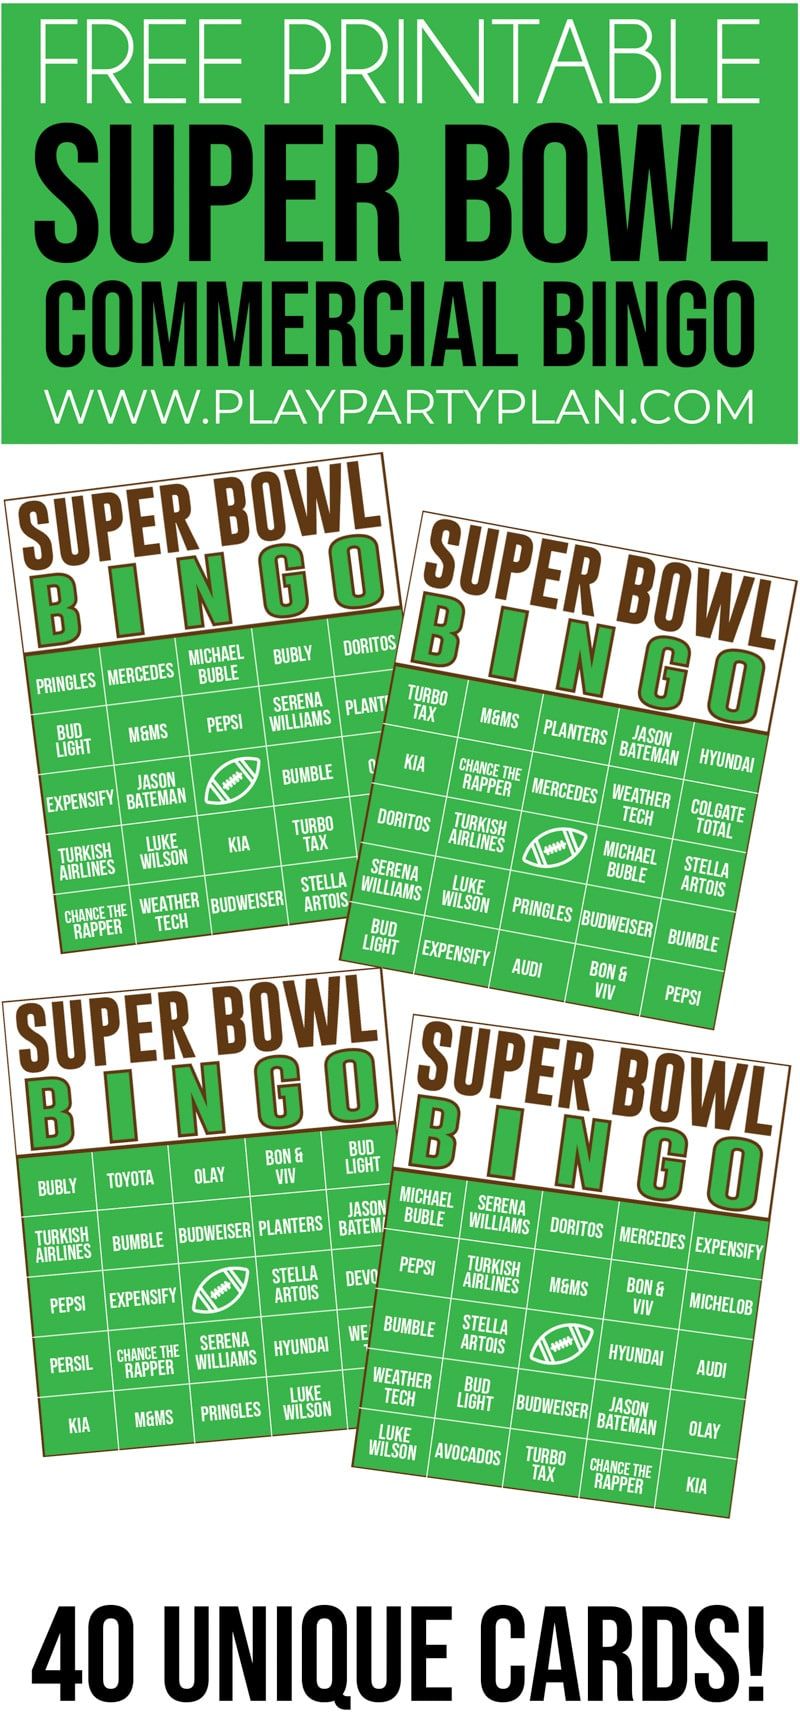 ¡Este bingo comercial del Super Bowl es uno de los mejores juegos de fiesta del Super Bowl! ¡Perfecto para niños o adultos!